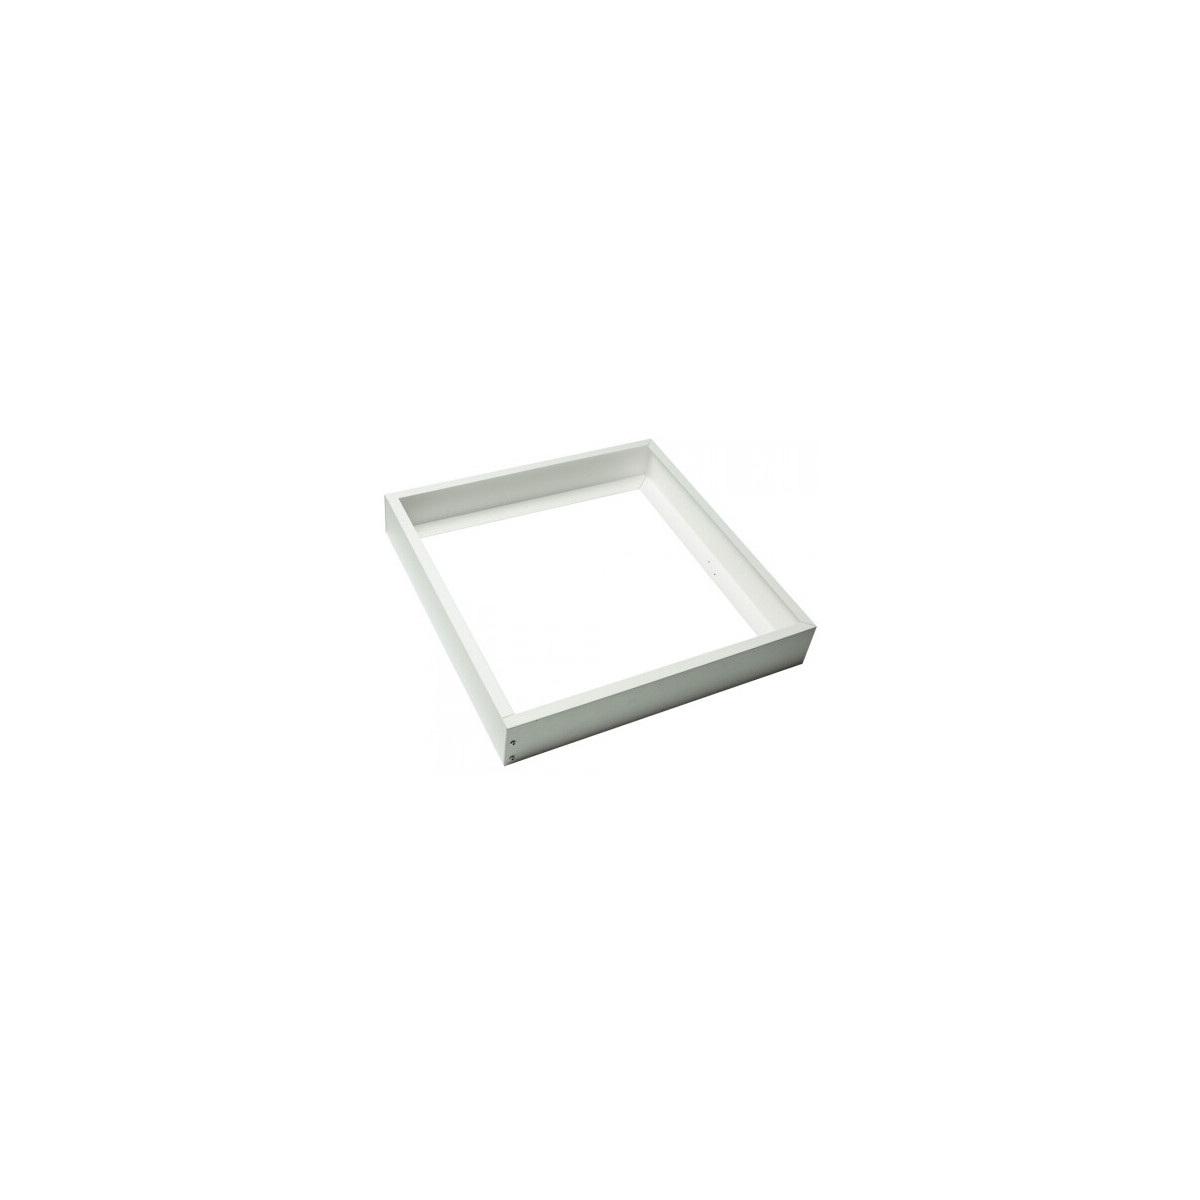 Panel Led techo 60 x 60 cm 40W, marco blanco, placa led 60x60